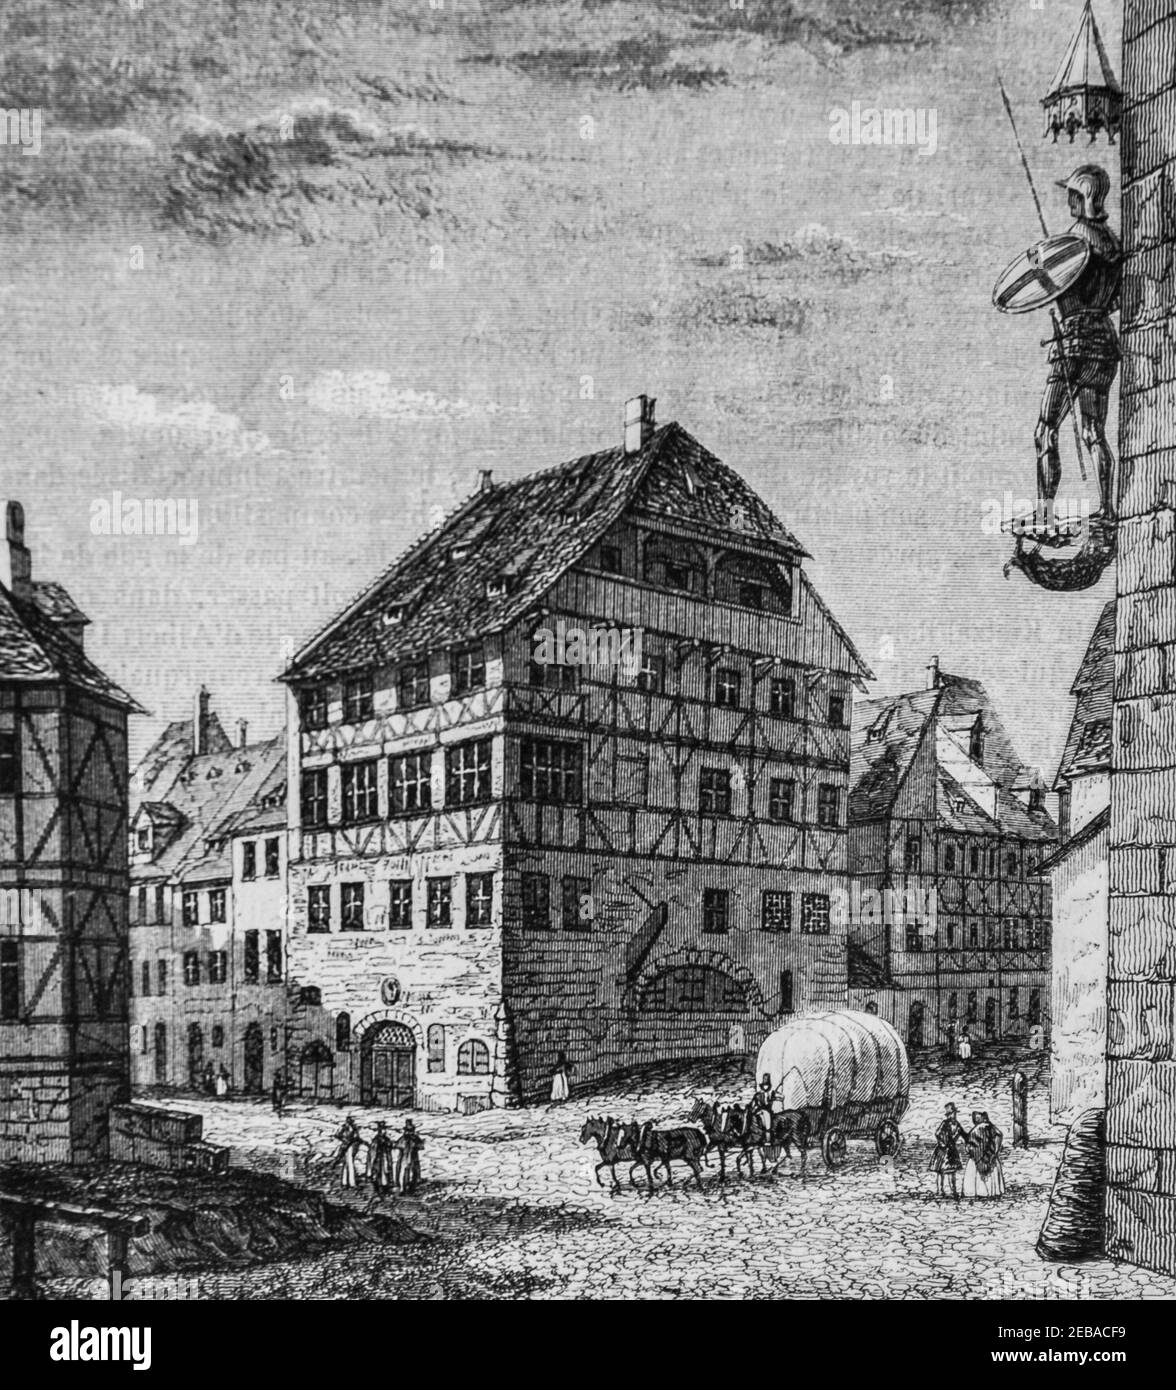 la maison d'albert durer a nürnberg, le Magazin pittoresque par edouard charton 1855 Stockfoto